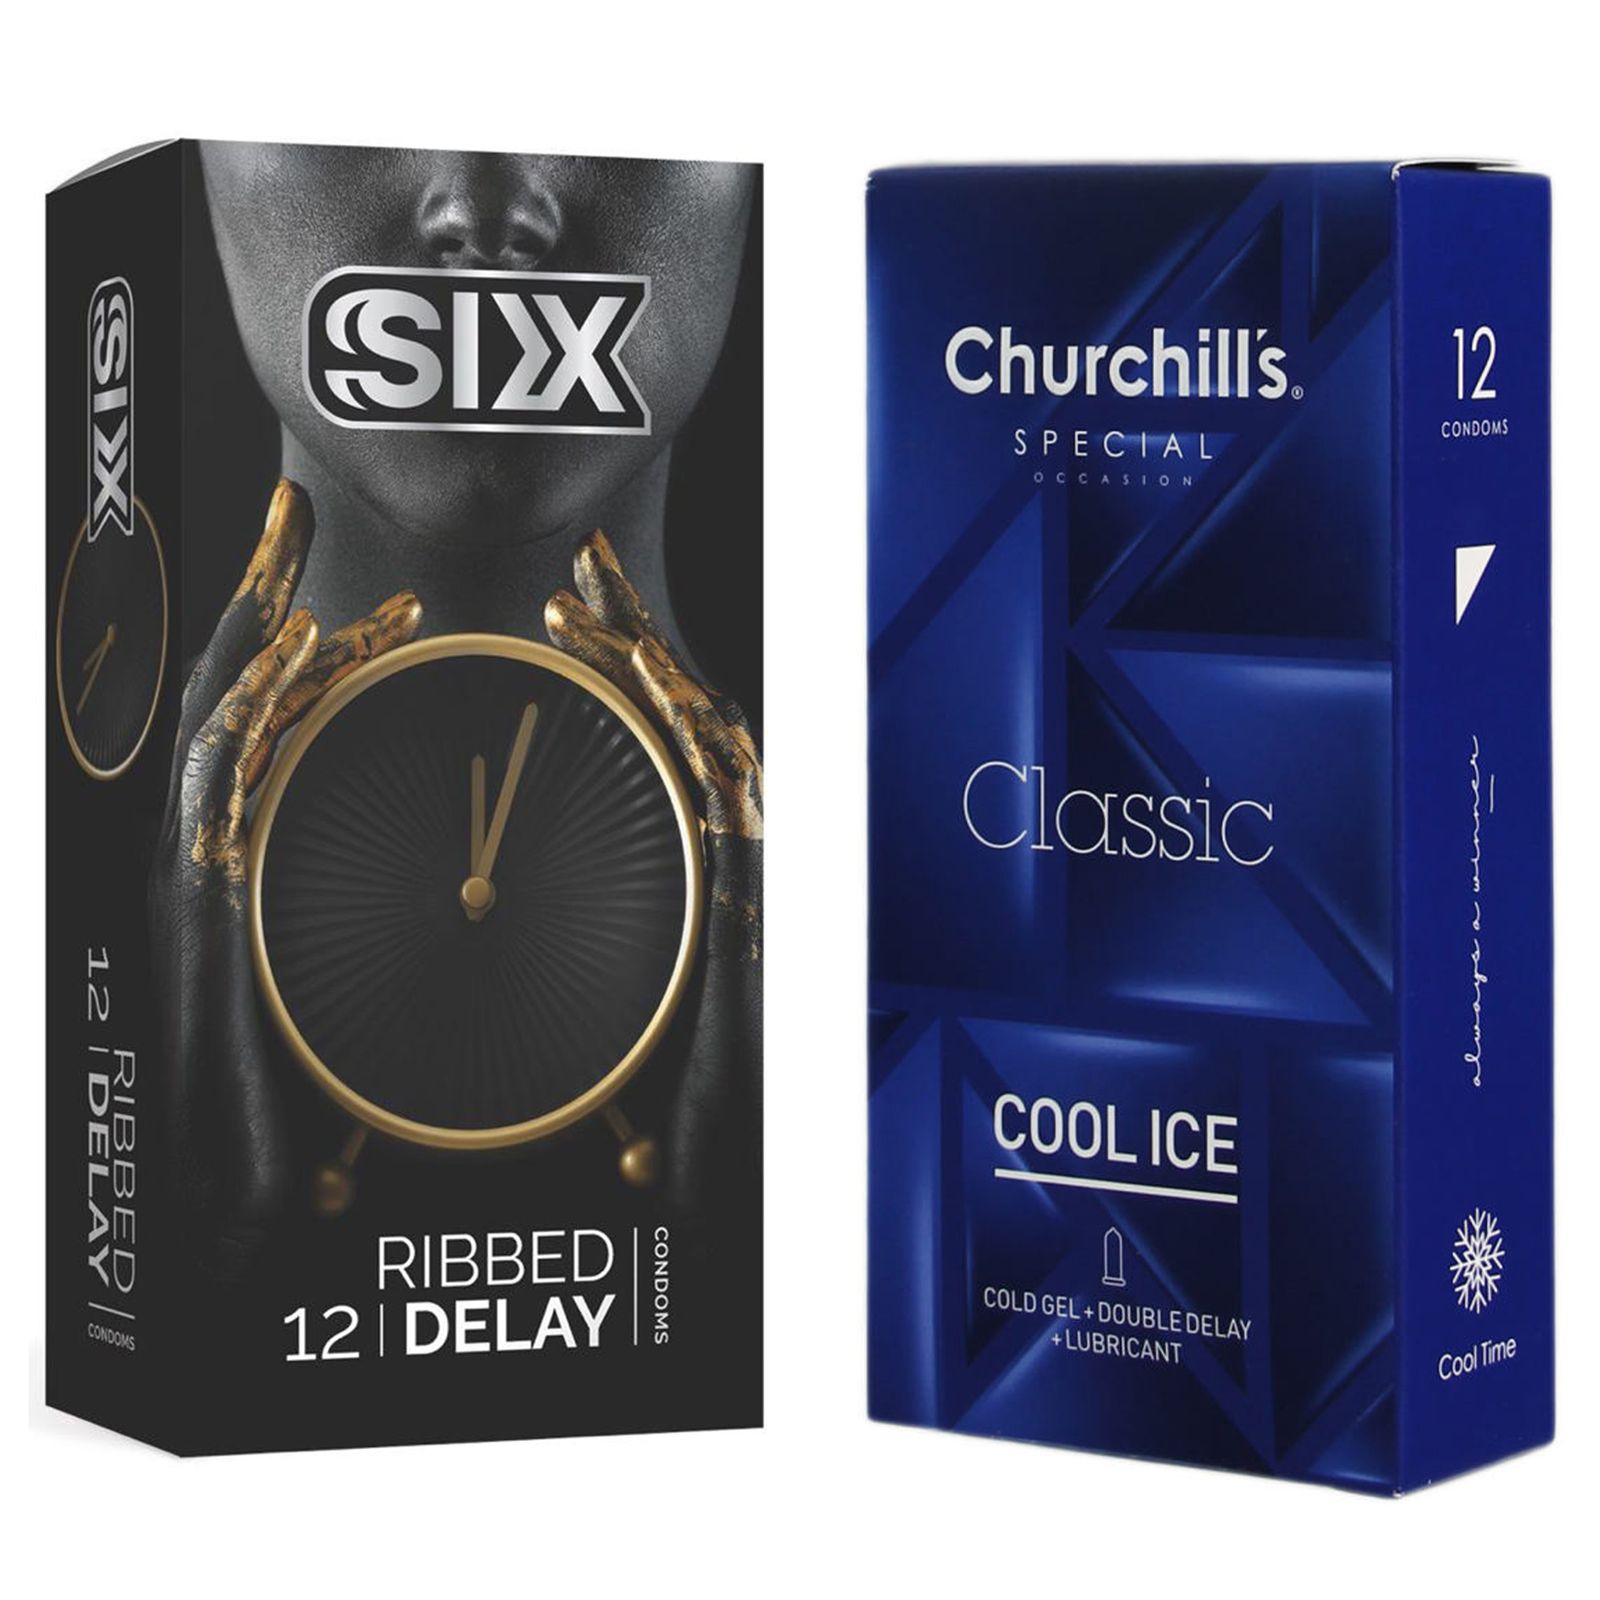 کاندوم چرچیلز مدل Cool Ice بسته 12 عددی به همراه کاندوم سیکس مدل تاخیری شیاردار بسته 12 عددی  -  - 2